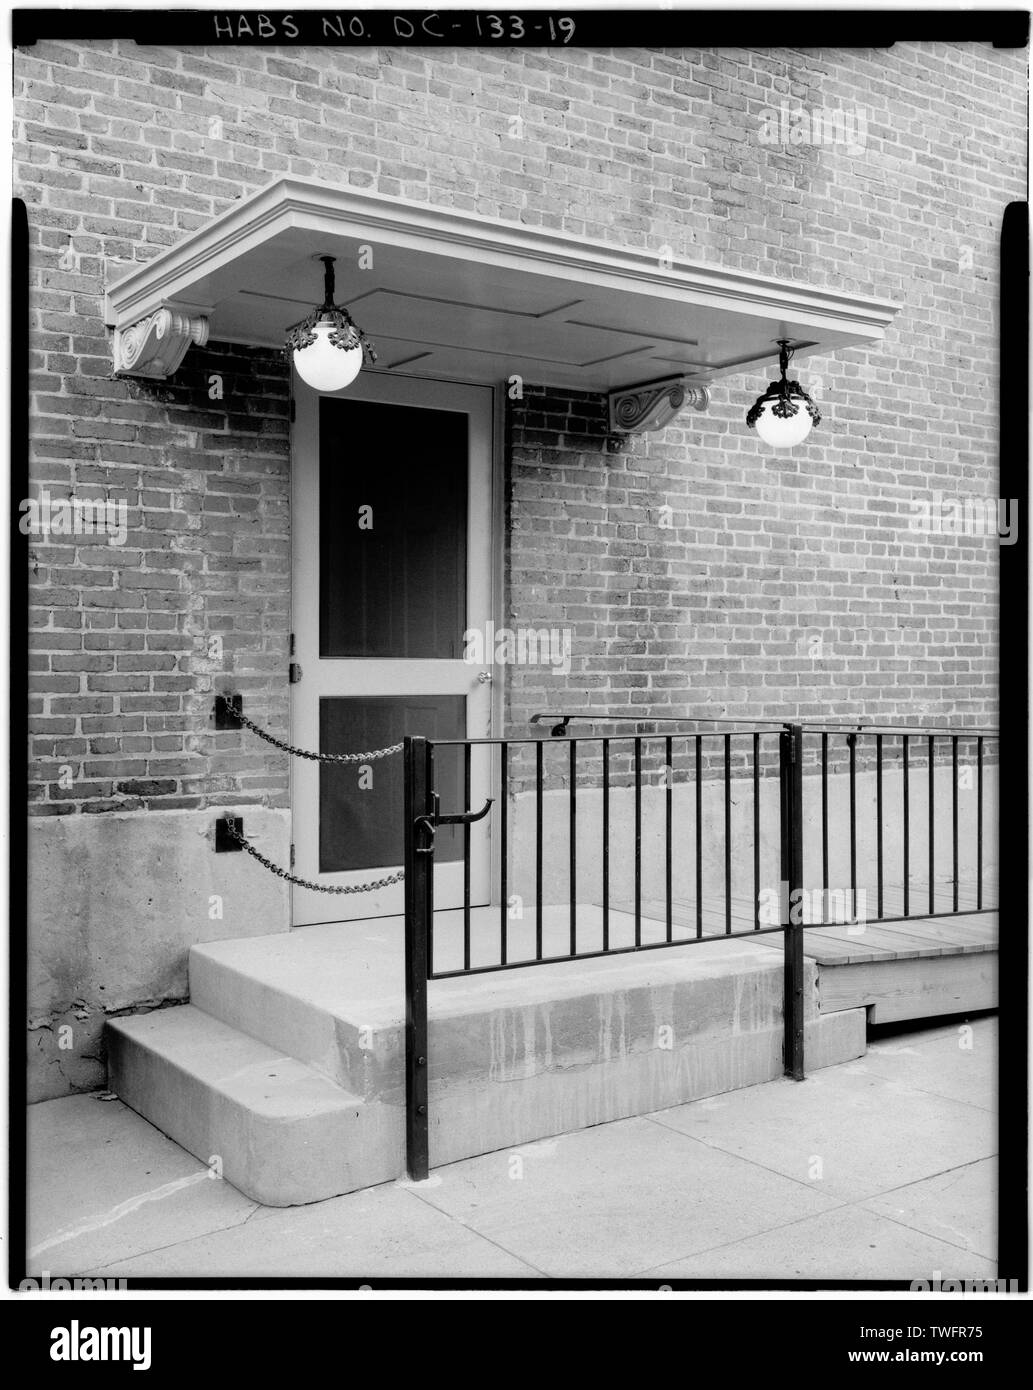 PRIVATE SEITE EINGANG HINZUGEFÜGT 1921 BARRIEREFREI VON DER AUFFAHRT ZUM AUFZUG ZU GEBEN. (Schmiedeeiserne Geländer, erweiterte oberen Schritt der Stoop (durch die dunkleren Beton zwischen den beiden vertikalen Beiträge angezeigt), und Holz- Rampe von der National Trust hinzugefügt modernen barrierefreien Zugang codes, circa 1980.) - Woodrow Wilson House, 2340 South Street, Northwest, Washington, District of Columbia, DC Stockfoto